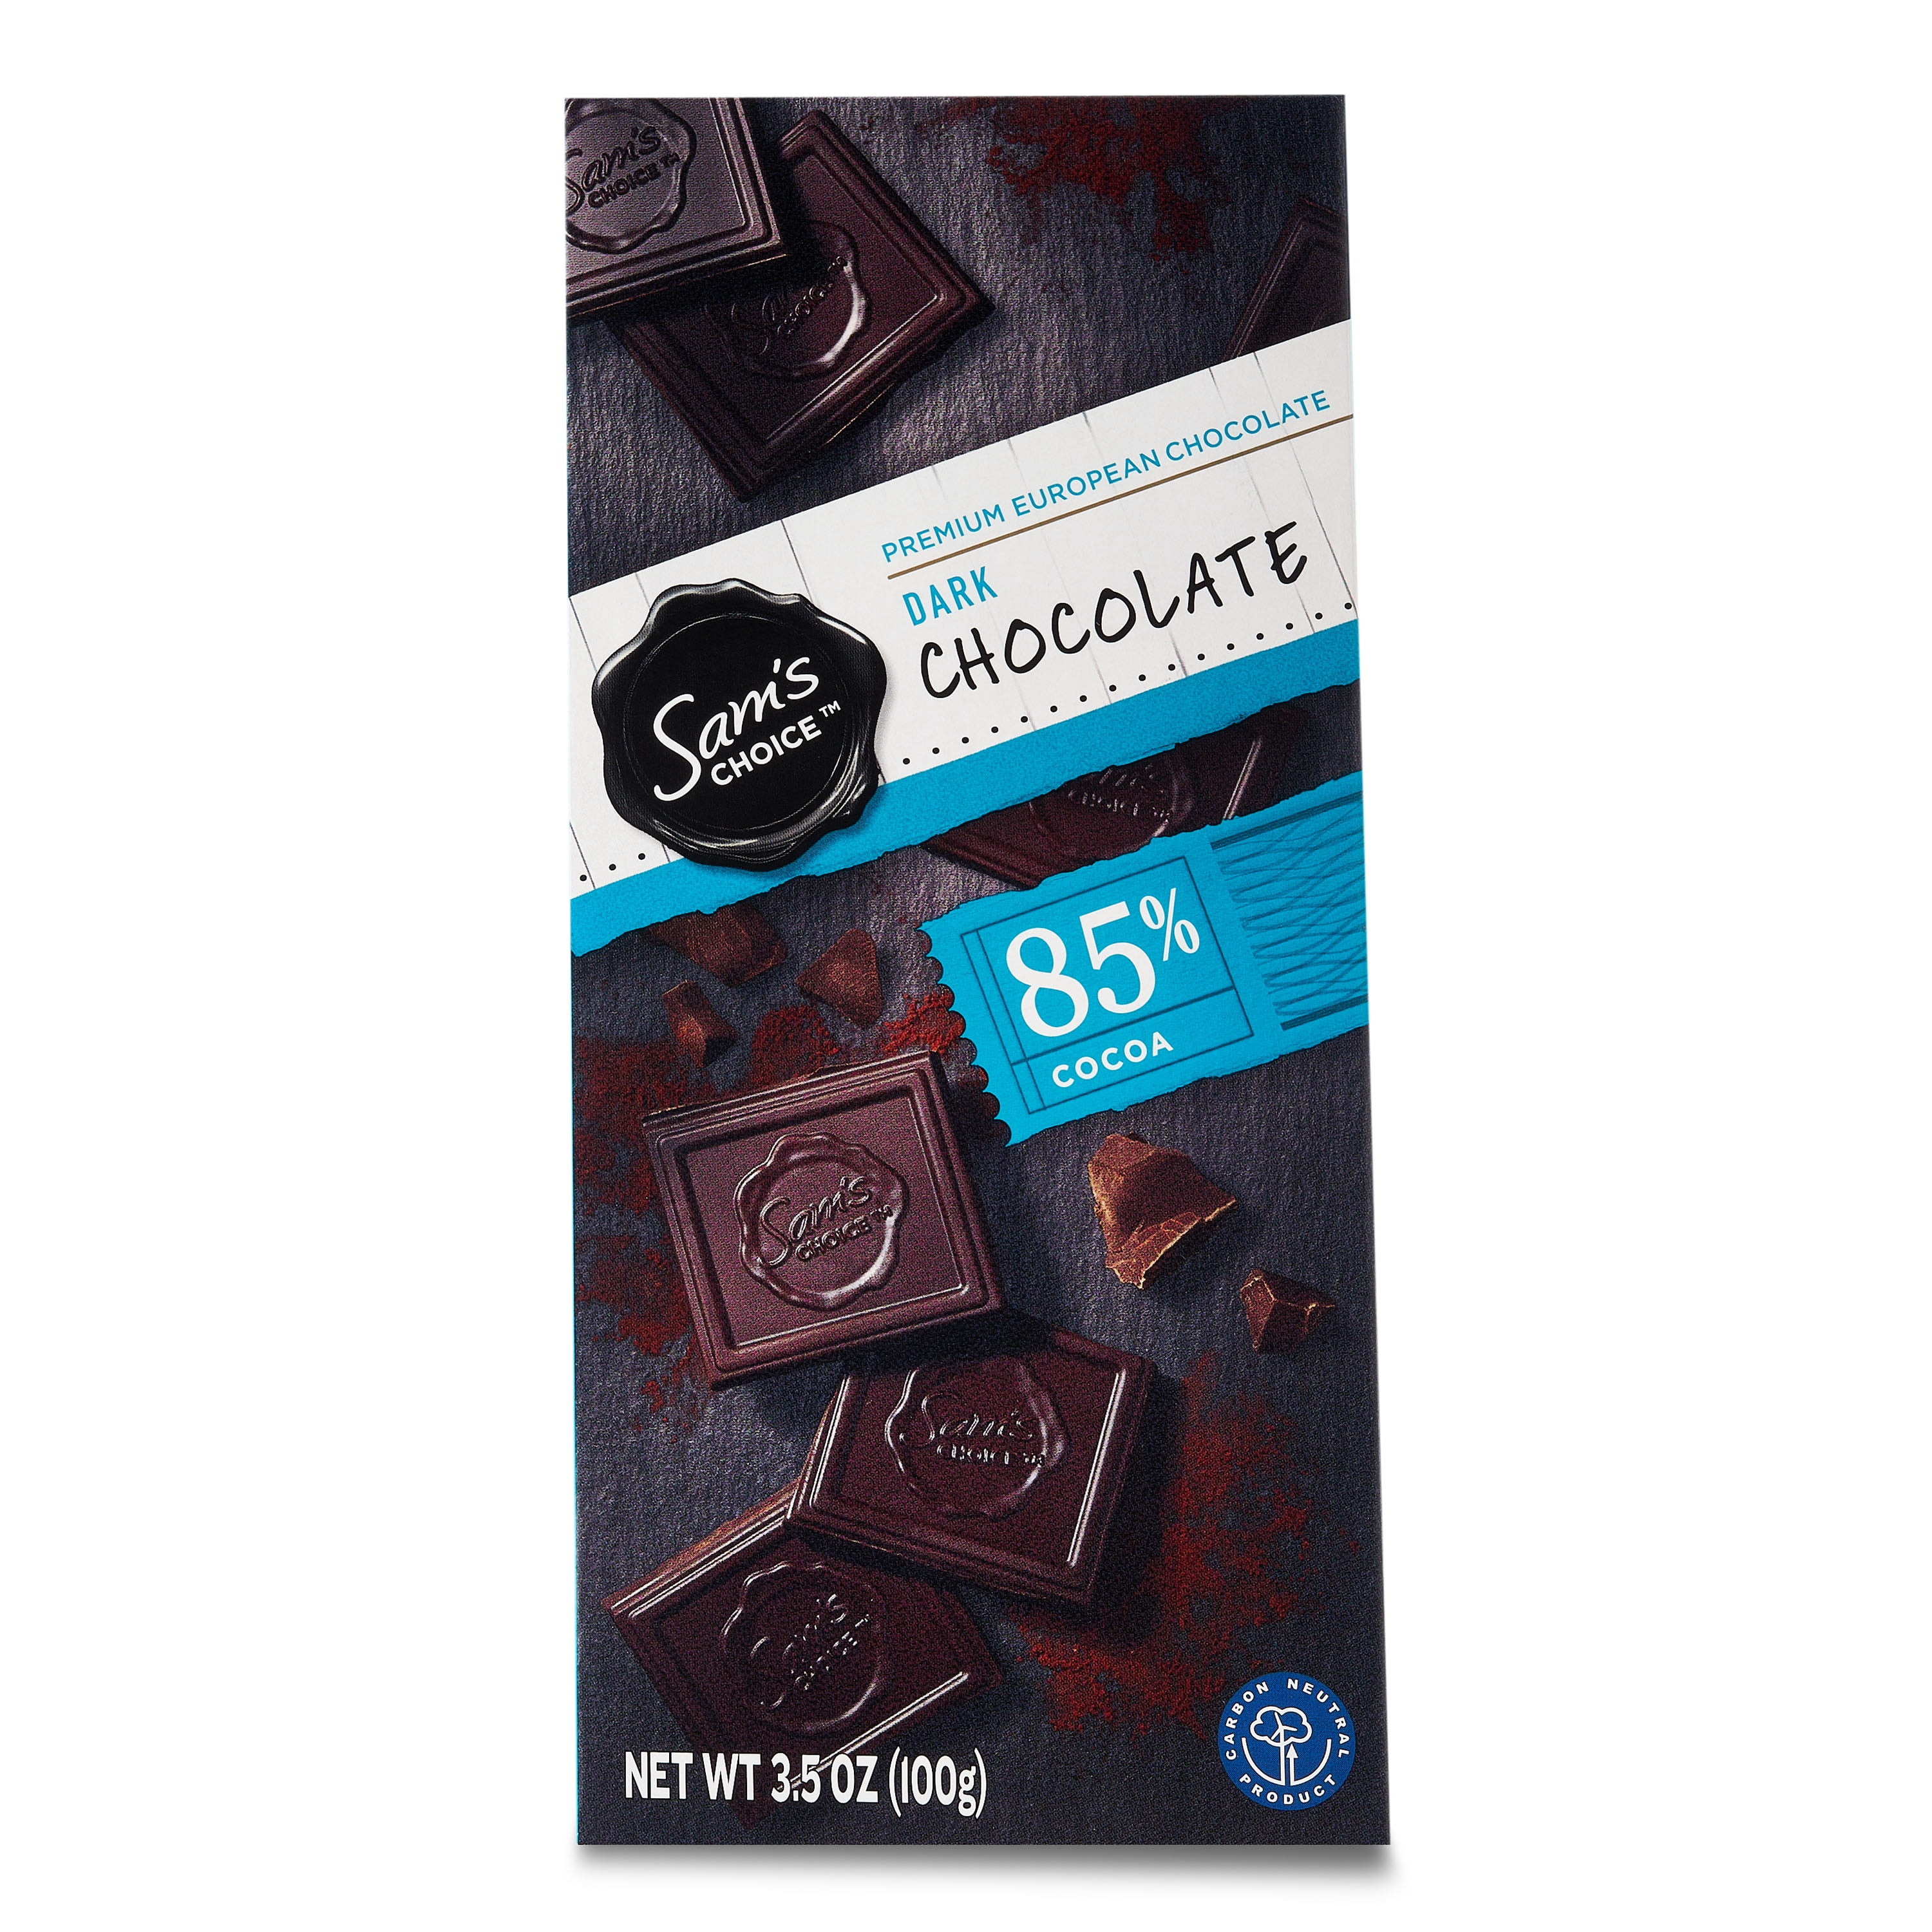 Sam's Choice 85% Cocoa Dark Chocolate Bar, 3.5 oz